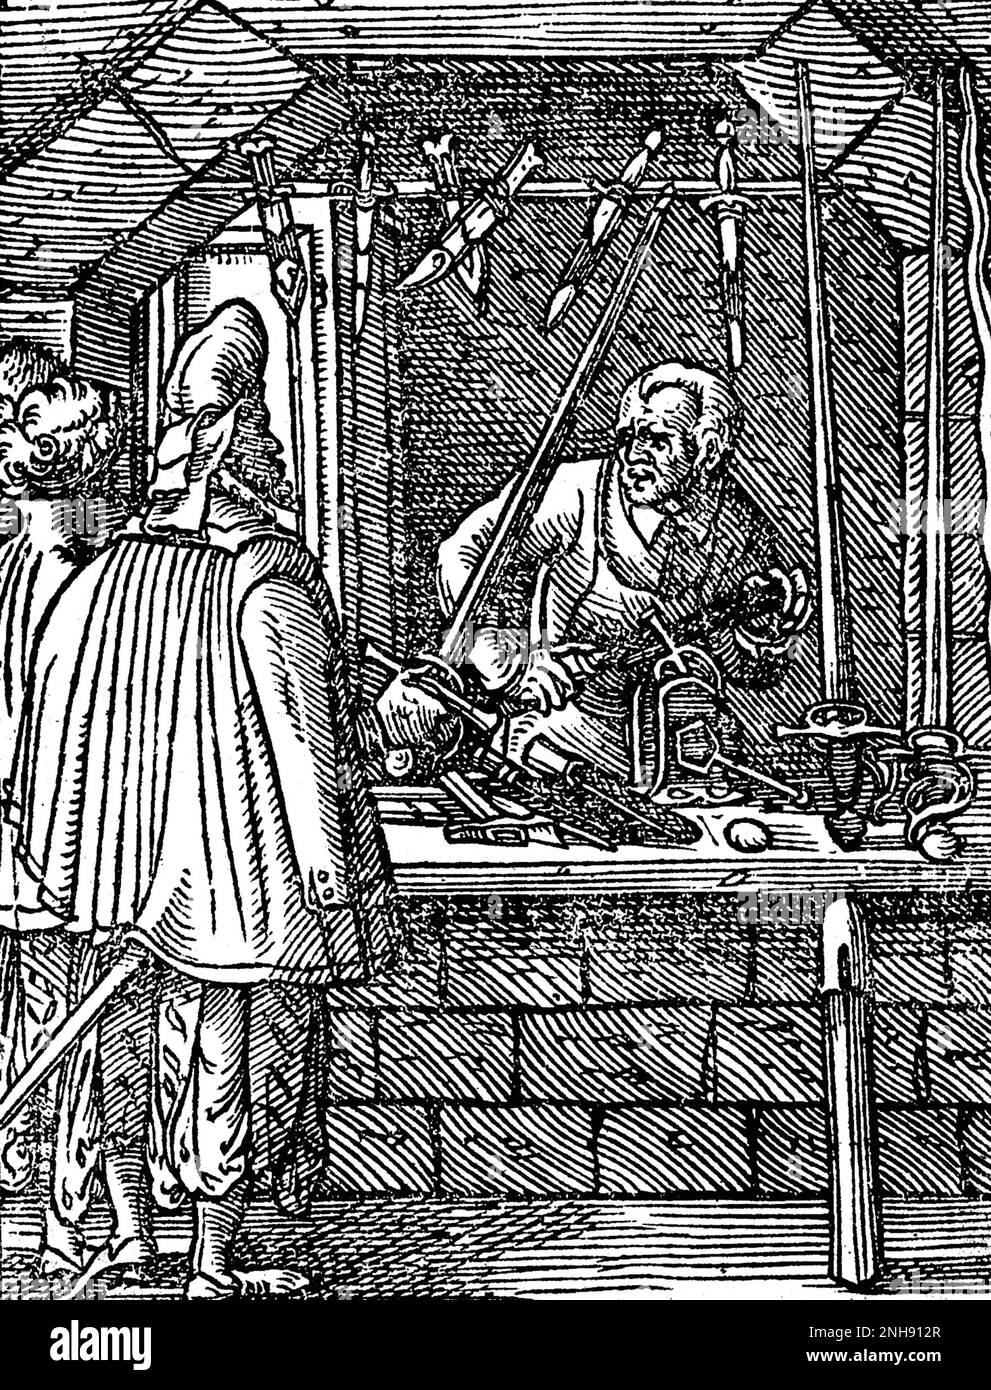 Ein Schneider oder Hersteller von Messern, Dolchen und Schwertern, der in seinem Geschäft als Kunde arbeitet, testet das Gewicht eines Schwertes. Illustration aus Jost Ammans Handwerksbuch, 1568. Stockfoto